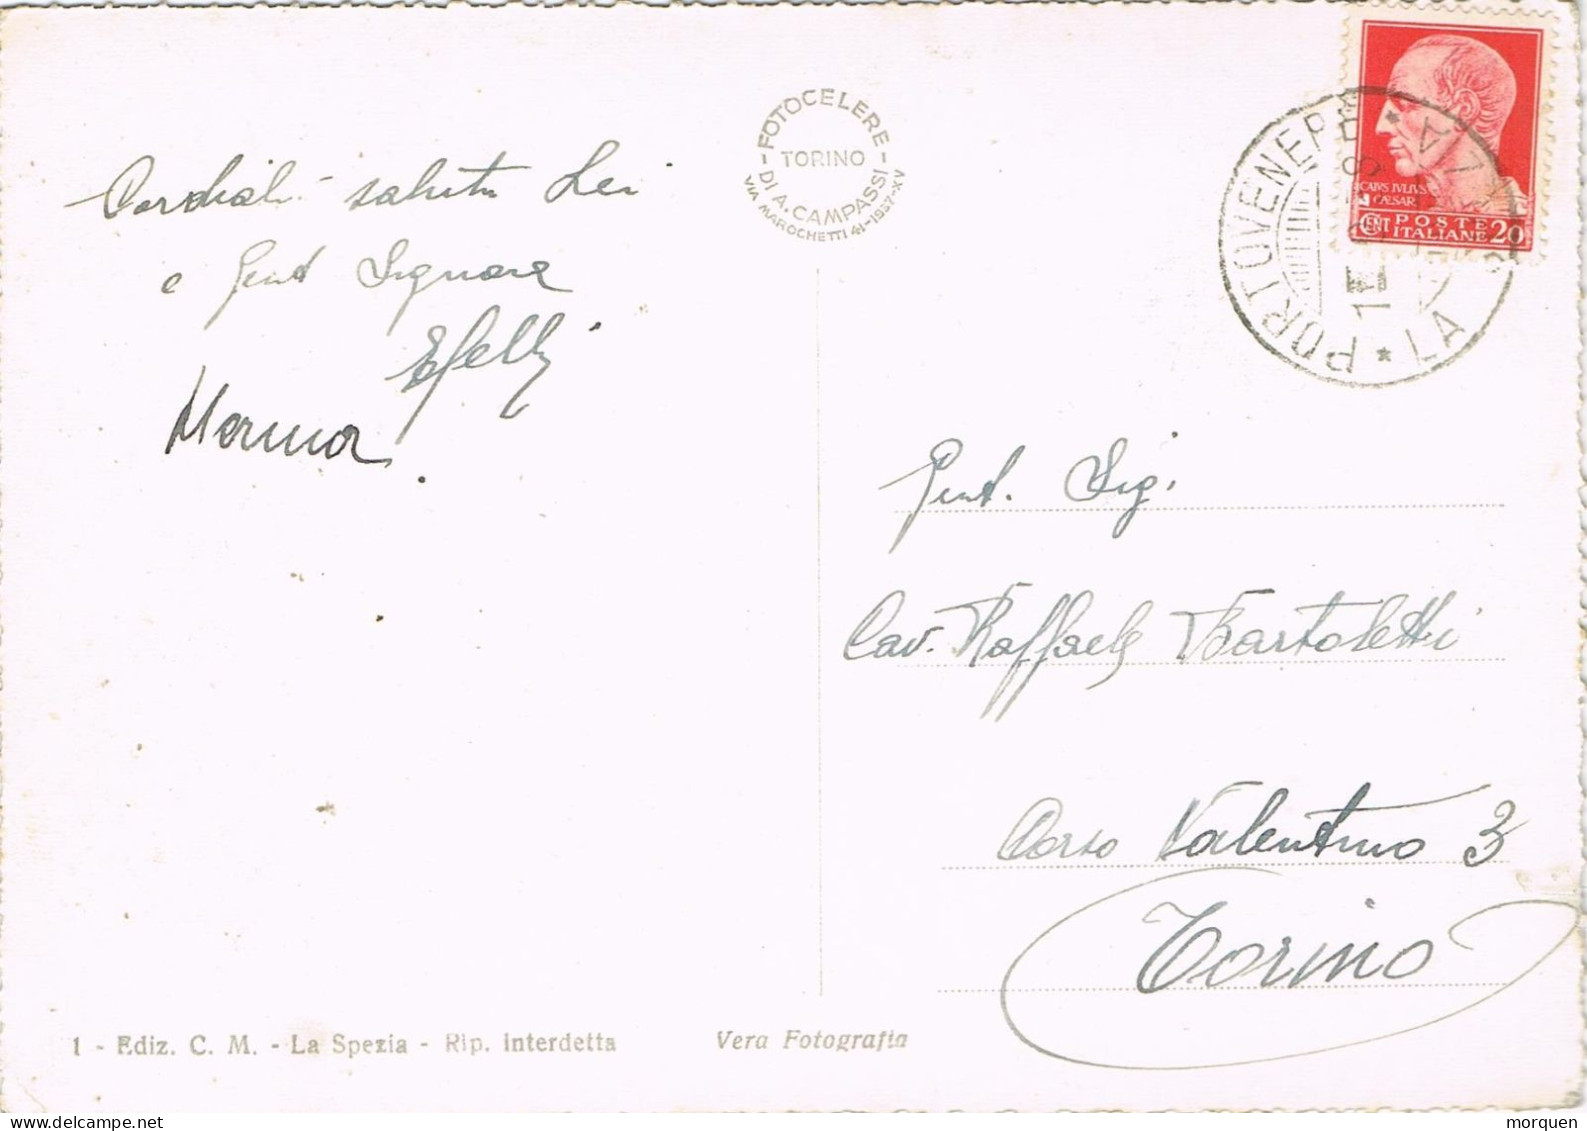 54974. Postal PORTO VENERE (La Spezia) Italia 1938. Vista Golfo De La Spèzia - Poststempel